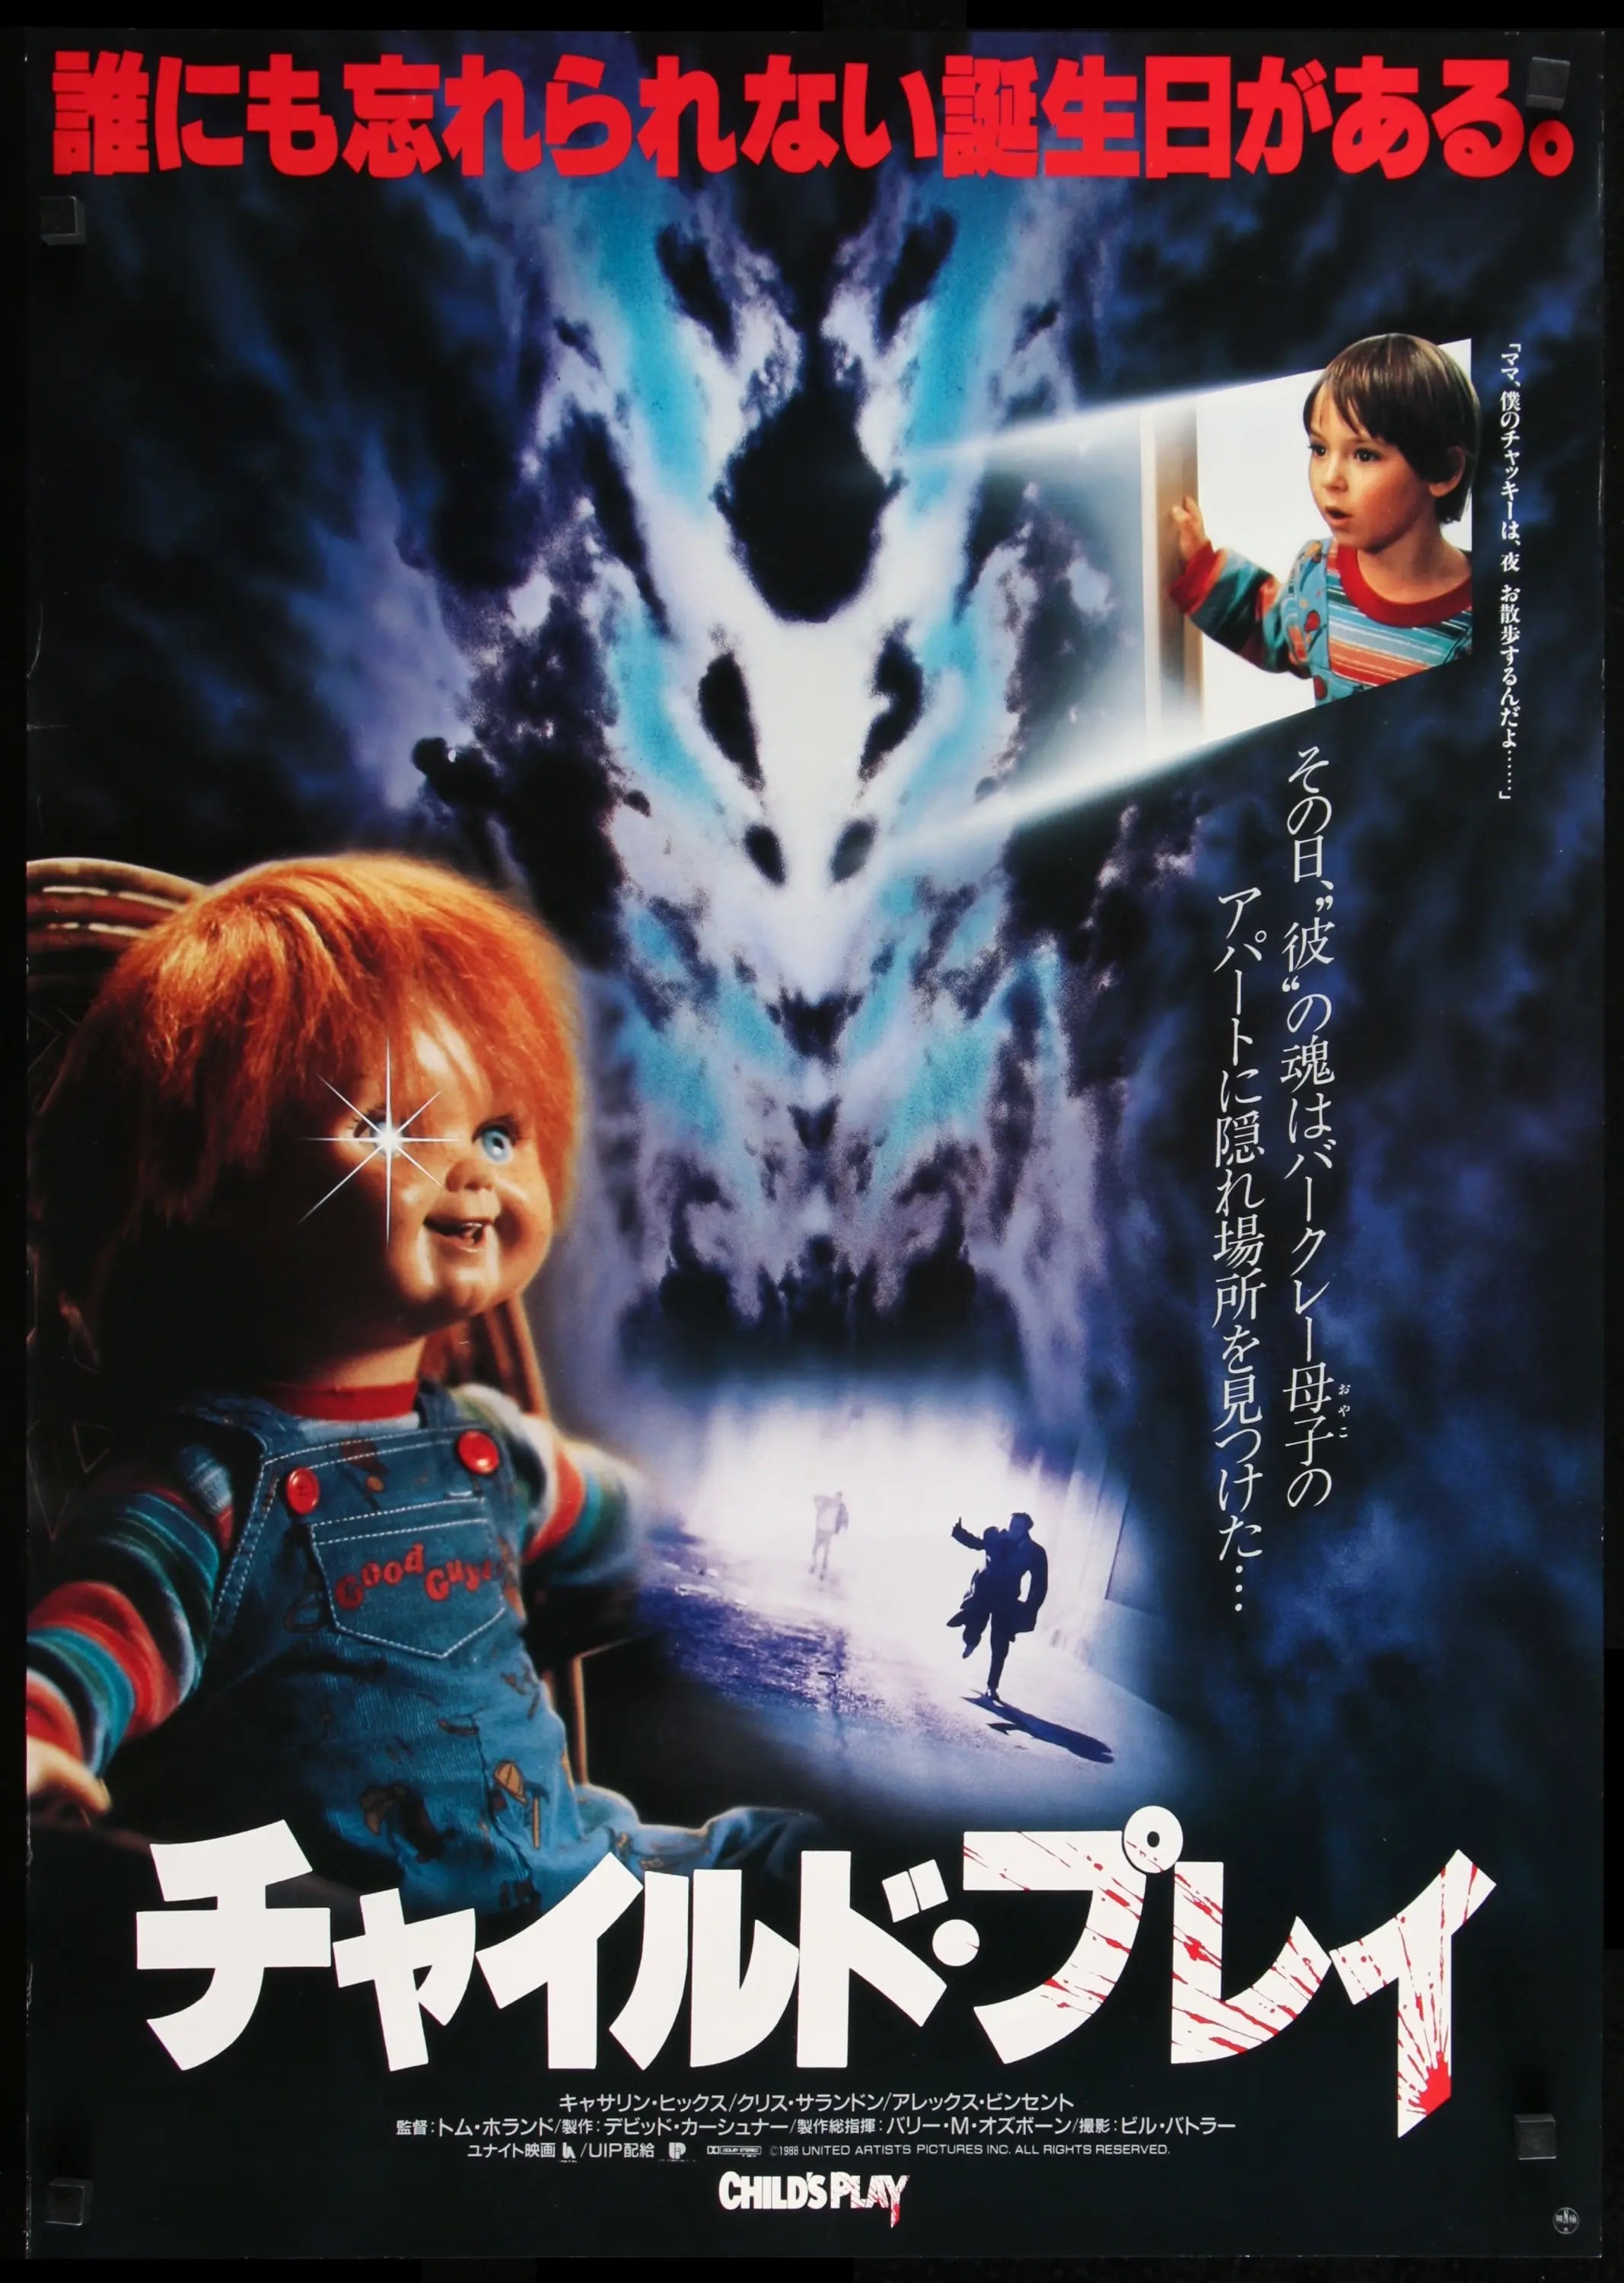 Child's Play (1988) Original Japanese B2 Movie Poster - Original